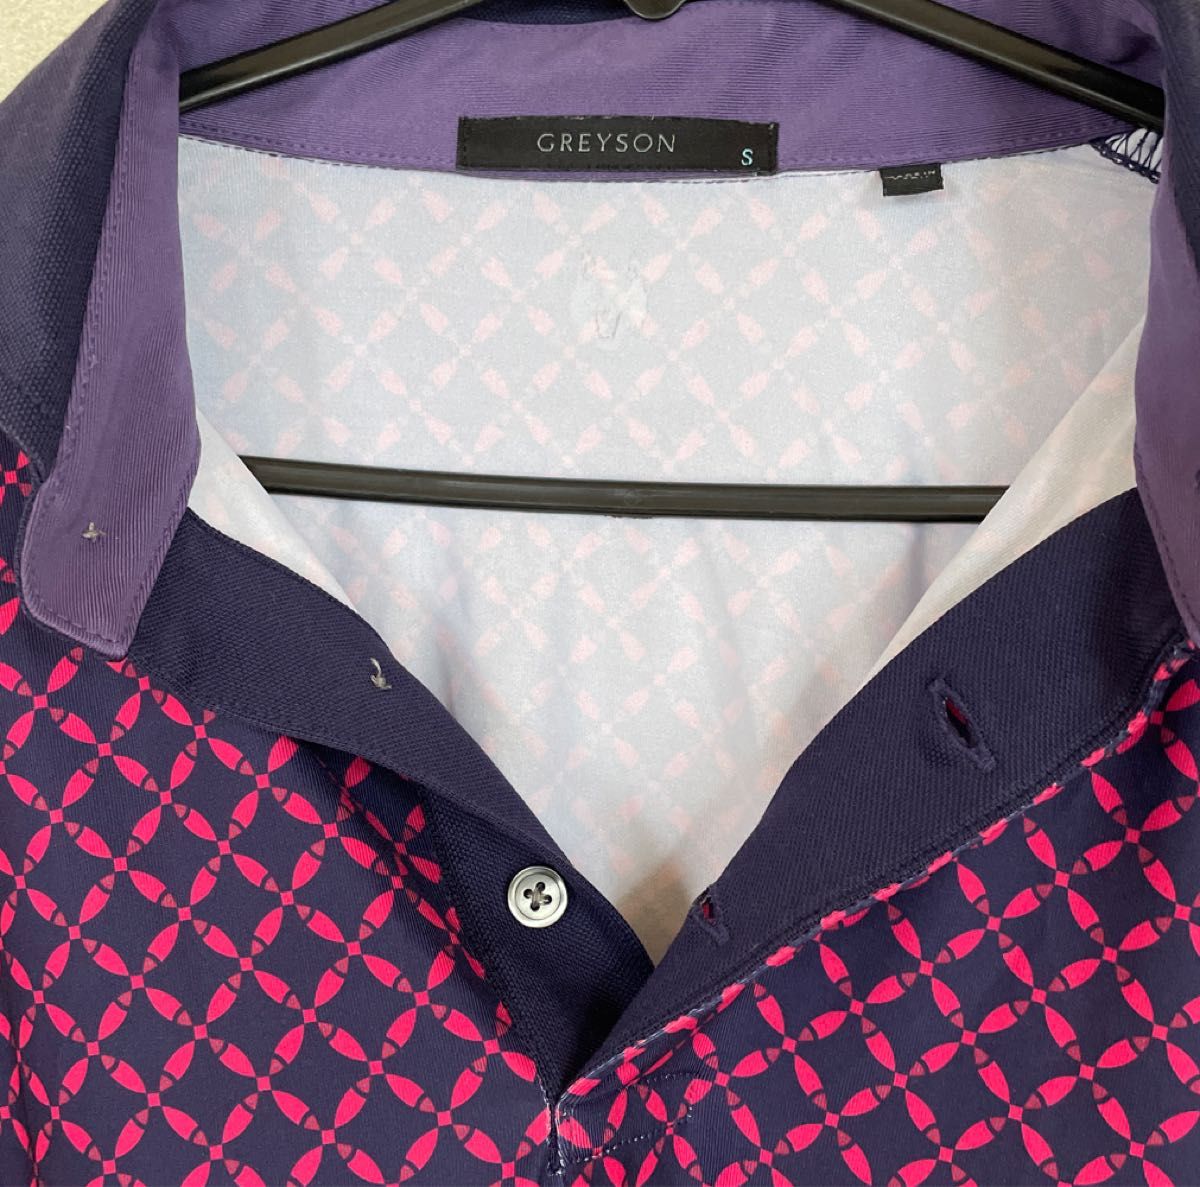 GREYSONグレイソン半袖ポロシャツネイビーカラーに赤紫色の手裏剣みたいな柄。Sサイズ